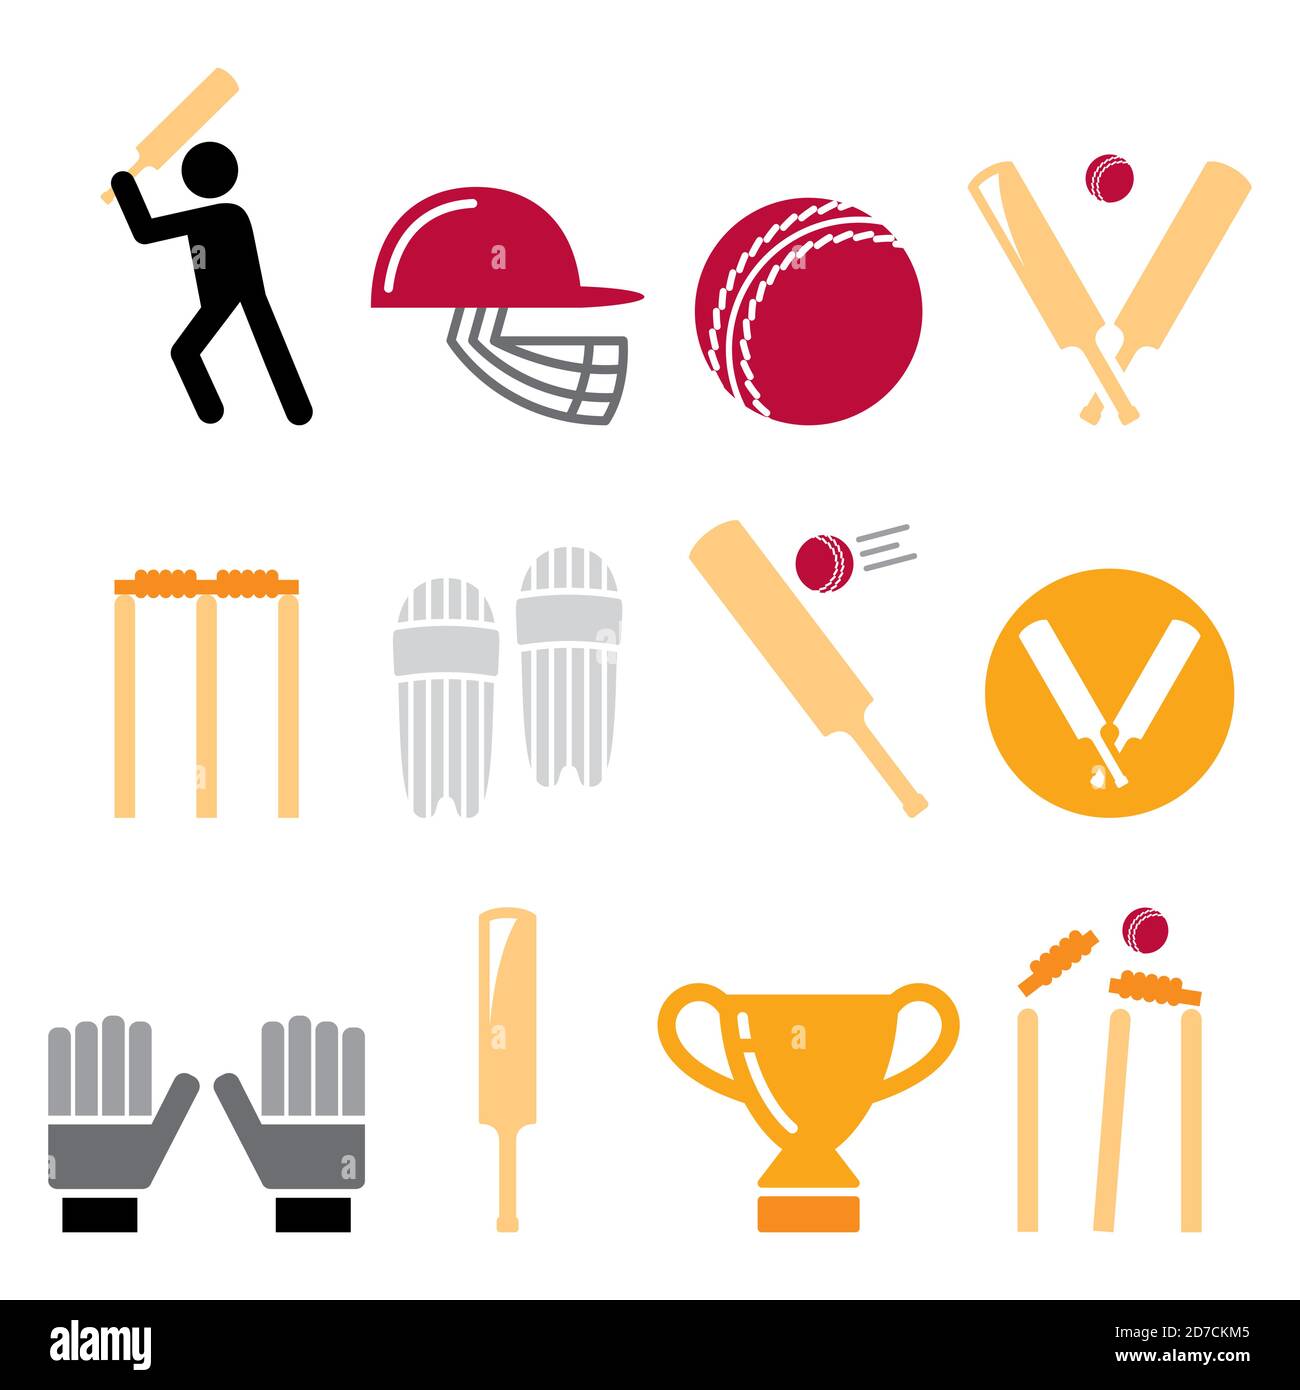 Batte de cricket, homme jouant au cricket, équipement de cricket - jeu d'icônes de vecteur de sport Illustration de Vecteur